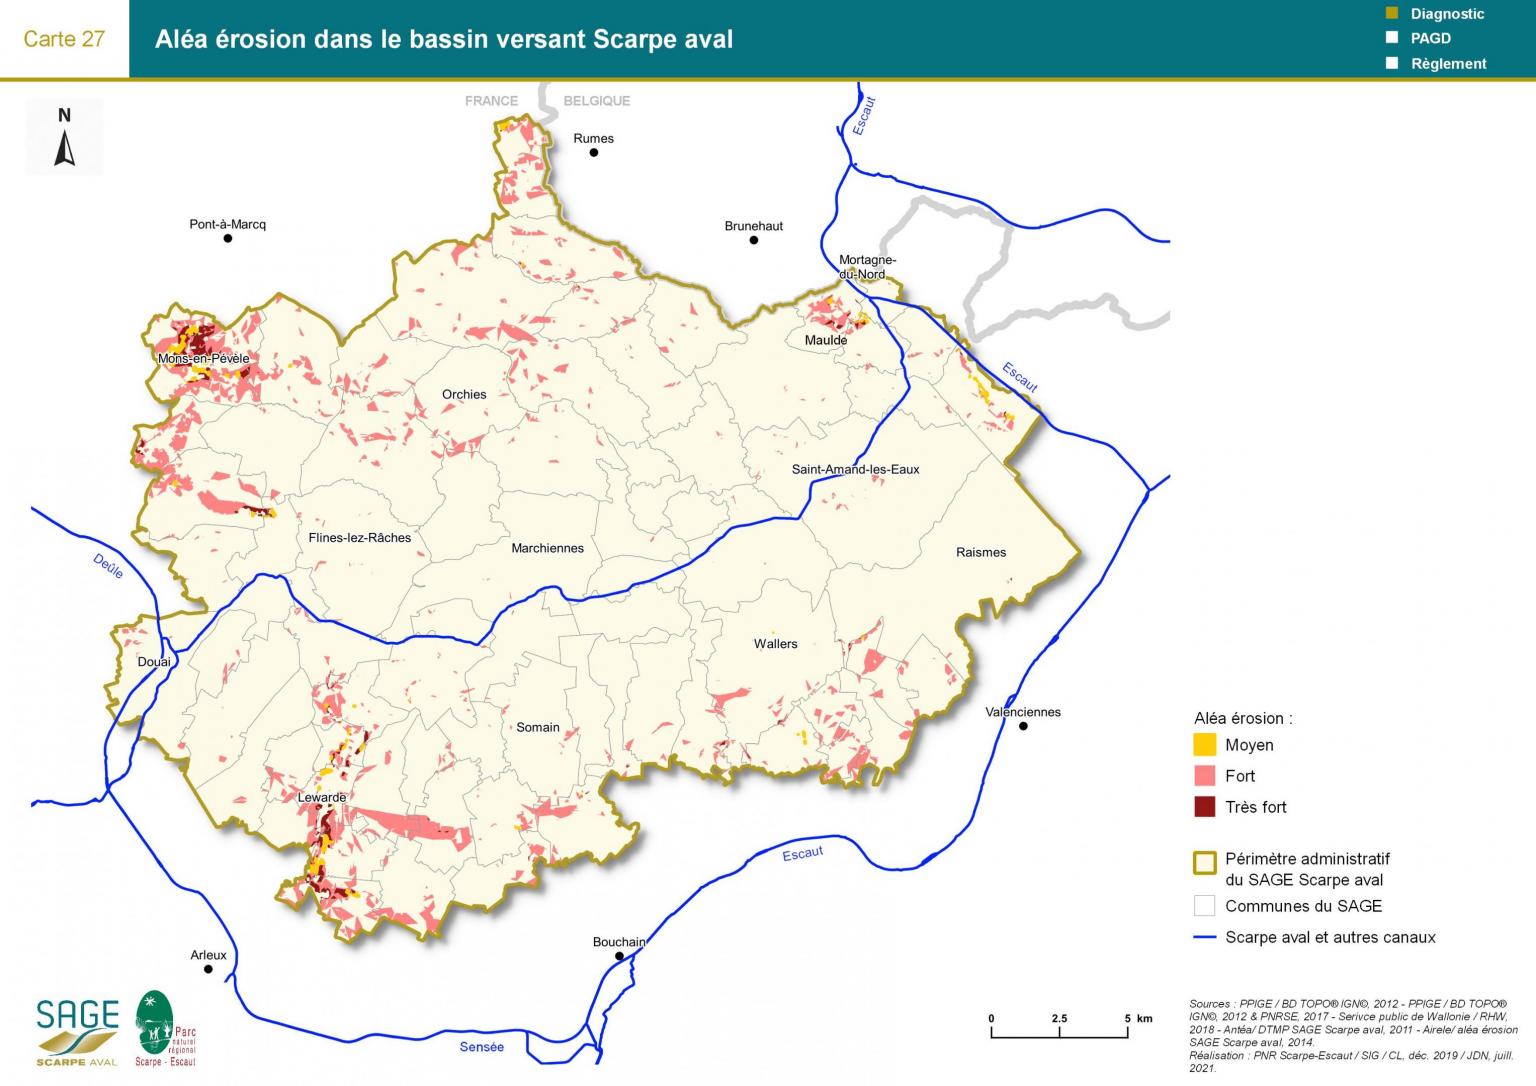 Etat des lieux - Carte 27 : Aléa érosion dans le bassin versant Scarpe aval